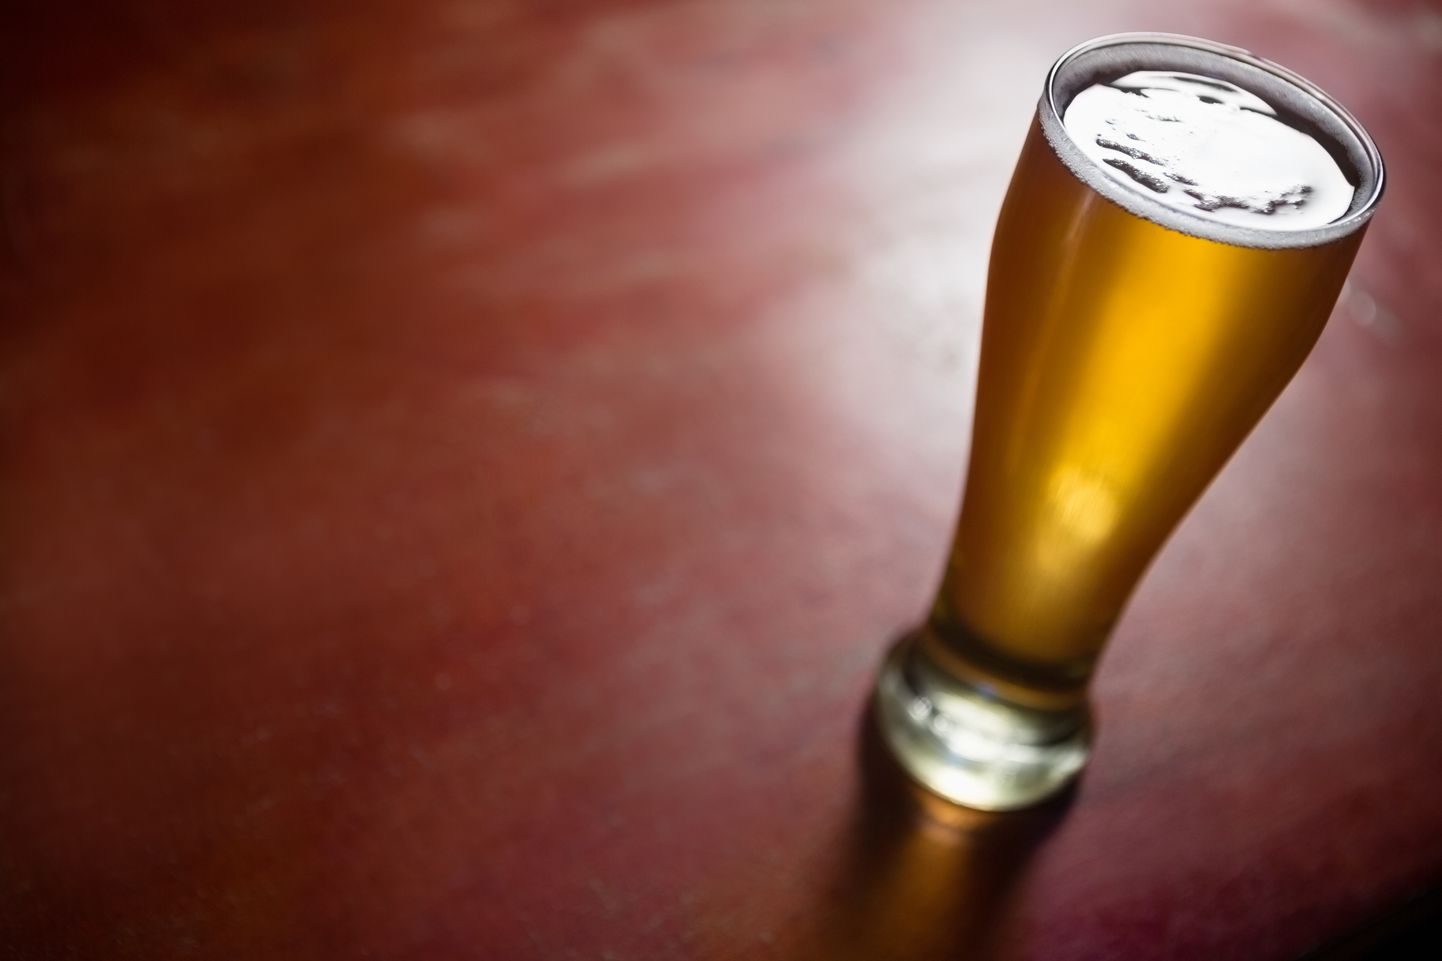 USAs on keelatud alkoholi müüa alla 21-aastastele.